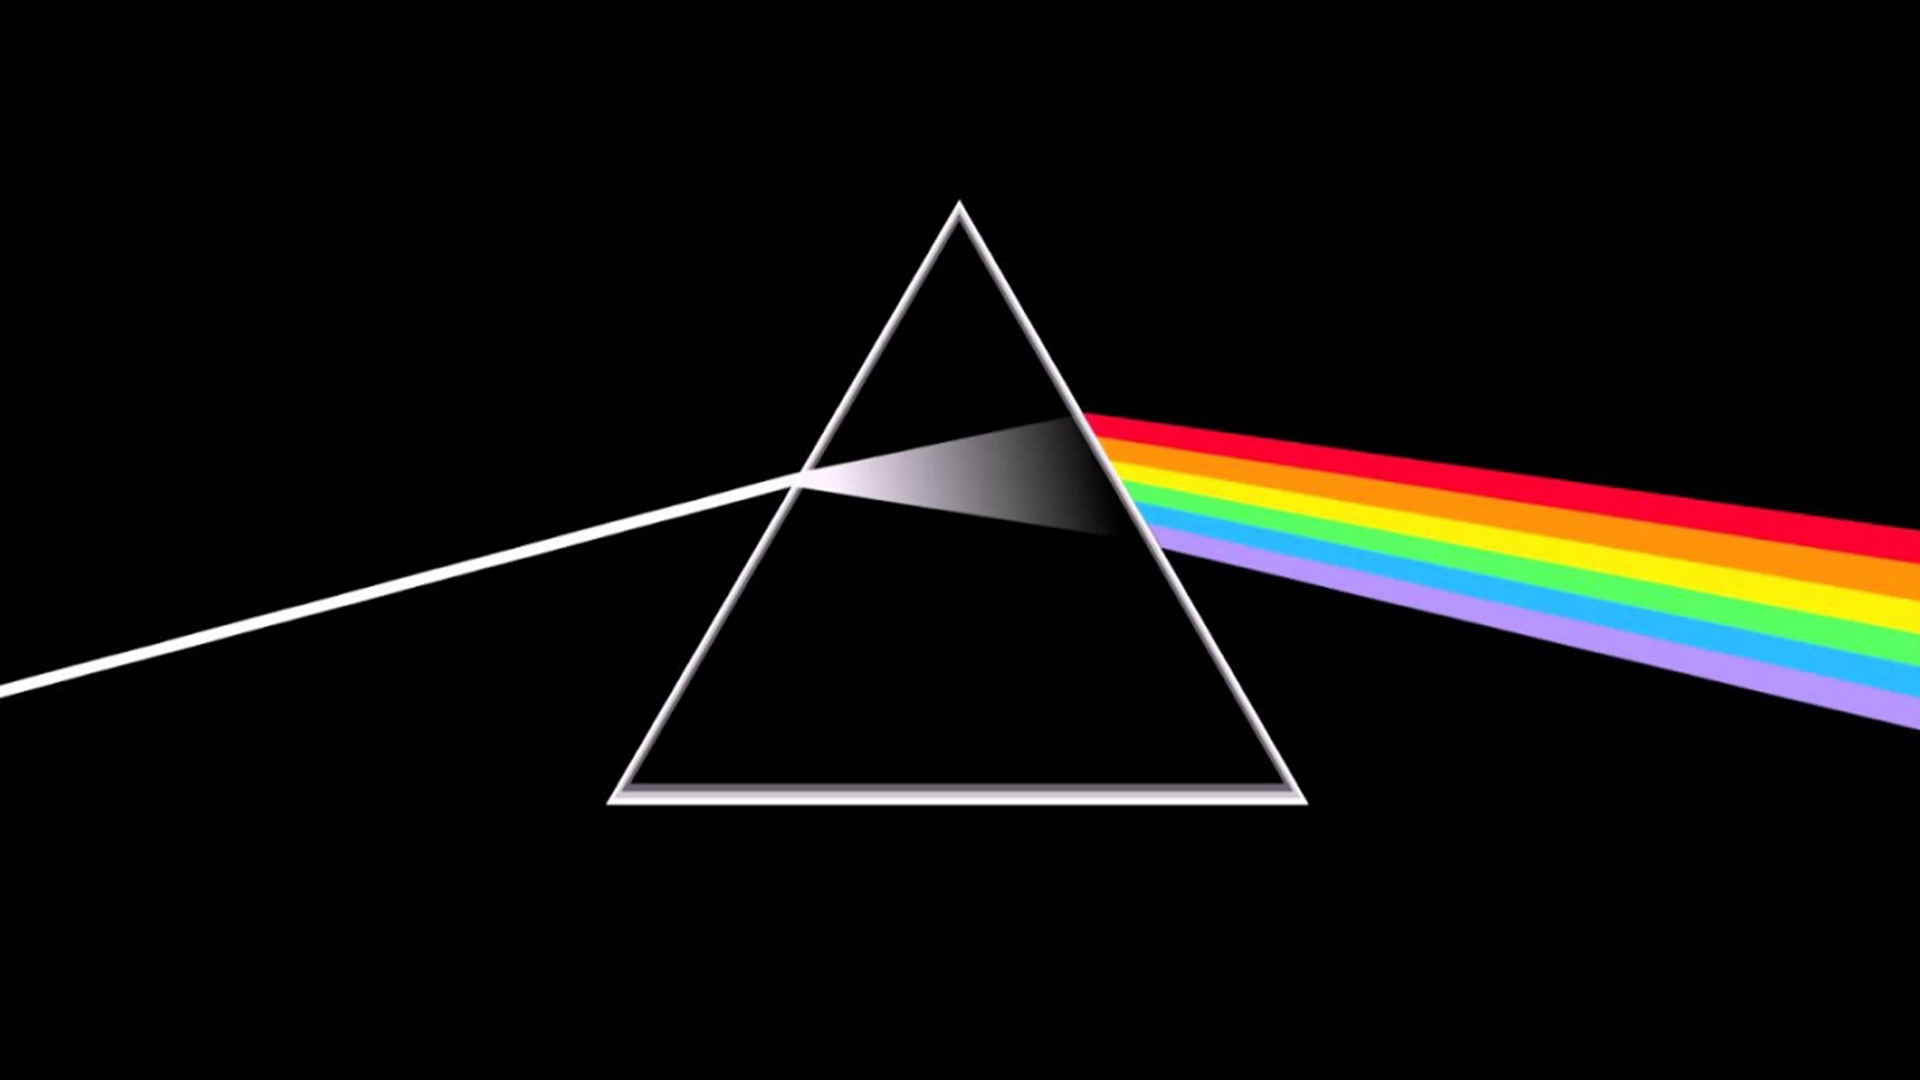 Pink Floyd trademark case